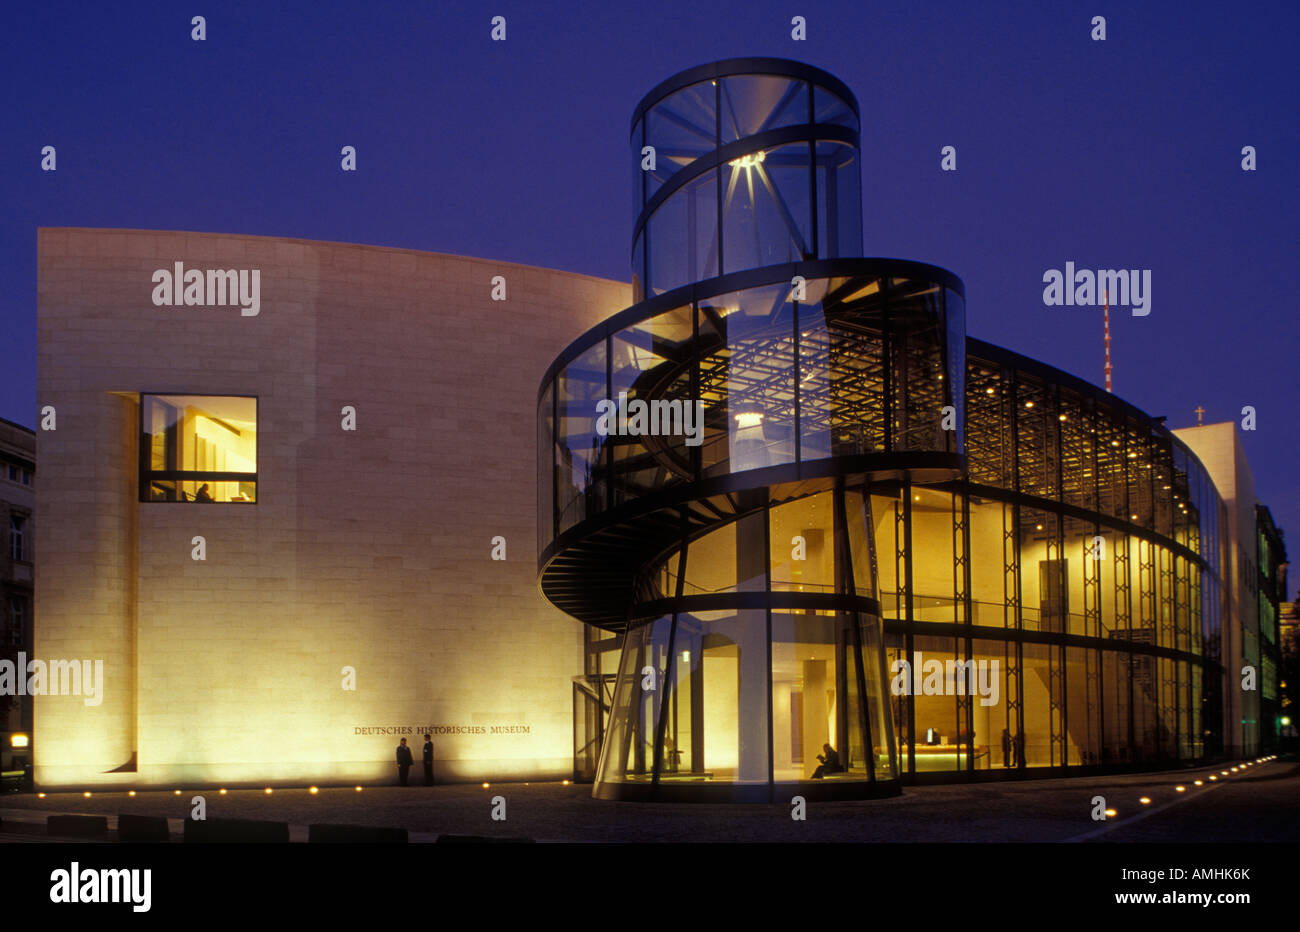 Erweiterung und Eingang des deutschen historischen Museums in Berlin von dem Architekten Ieoh Ming Pei. Deutschen historischen Museum. DHM. Stockfoto